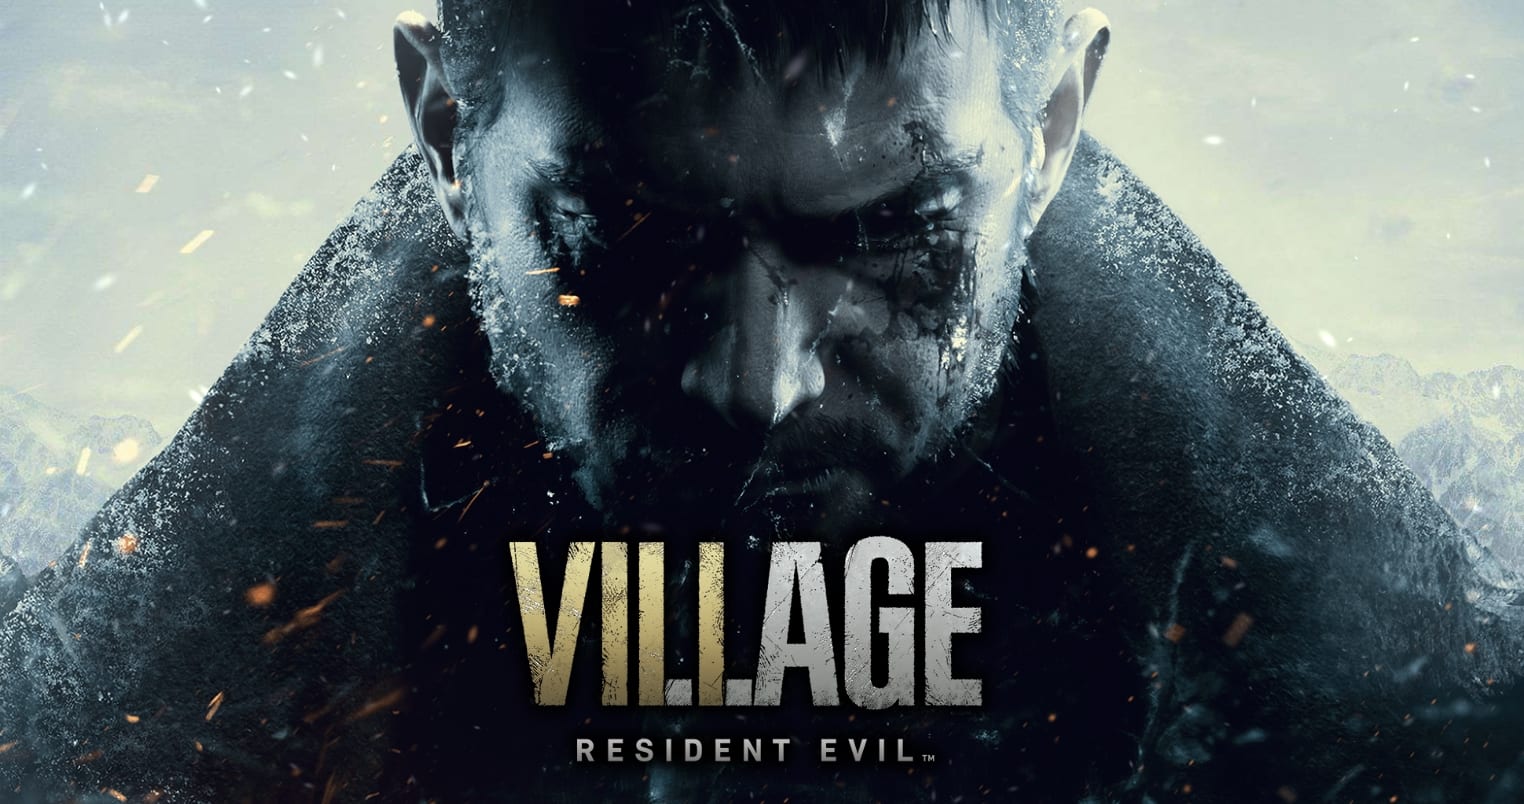 Resident evil village rating